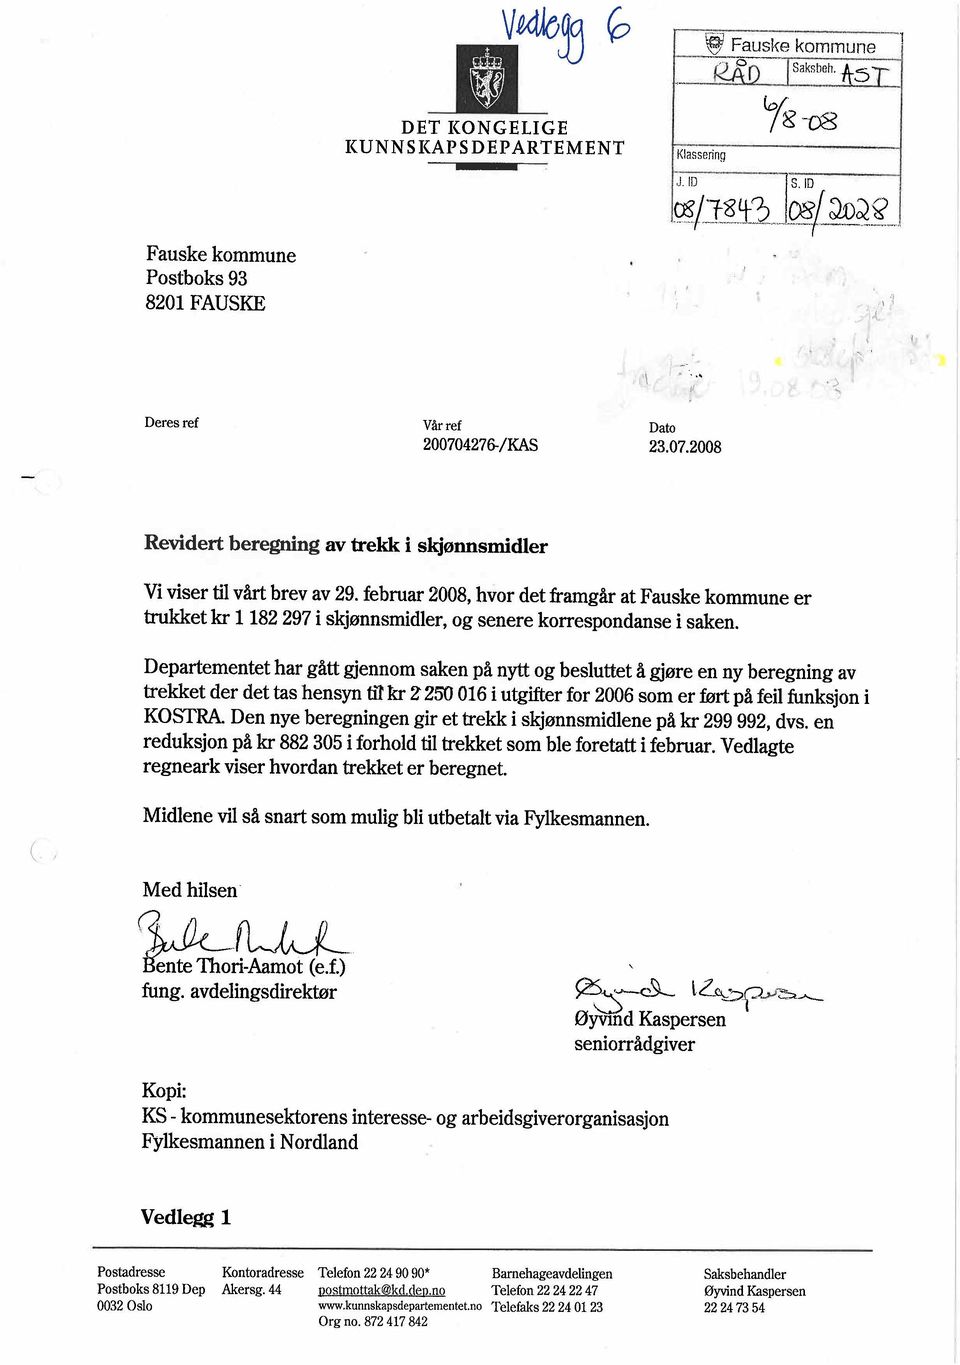 februar 2008, hvor det framgår at Fauske kommune er trkket kr 1182 297 i skjønnsmidier, og senere korrespondanse i saken, Departementet har gått gjennom saken på nyt og besluttet å gjøre en ny